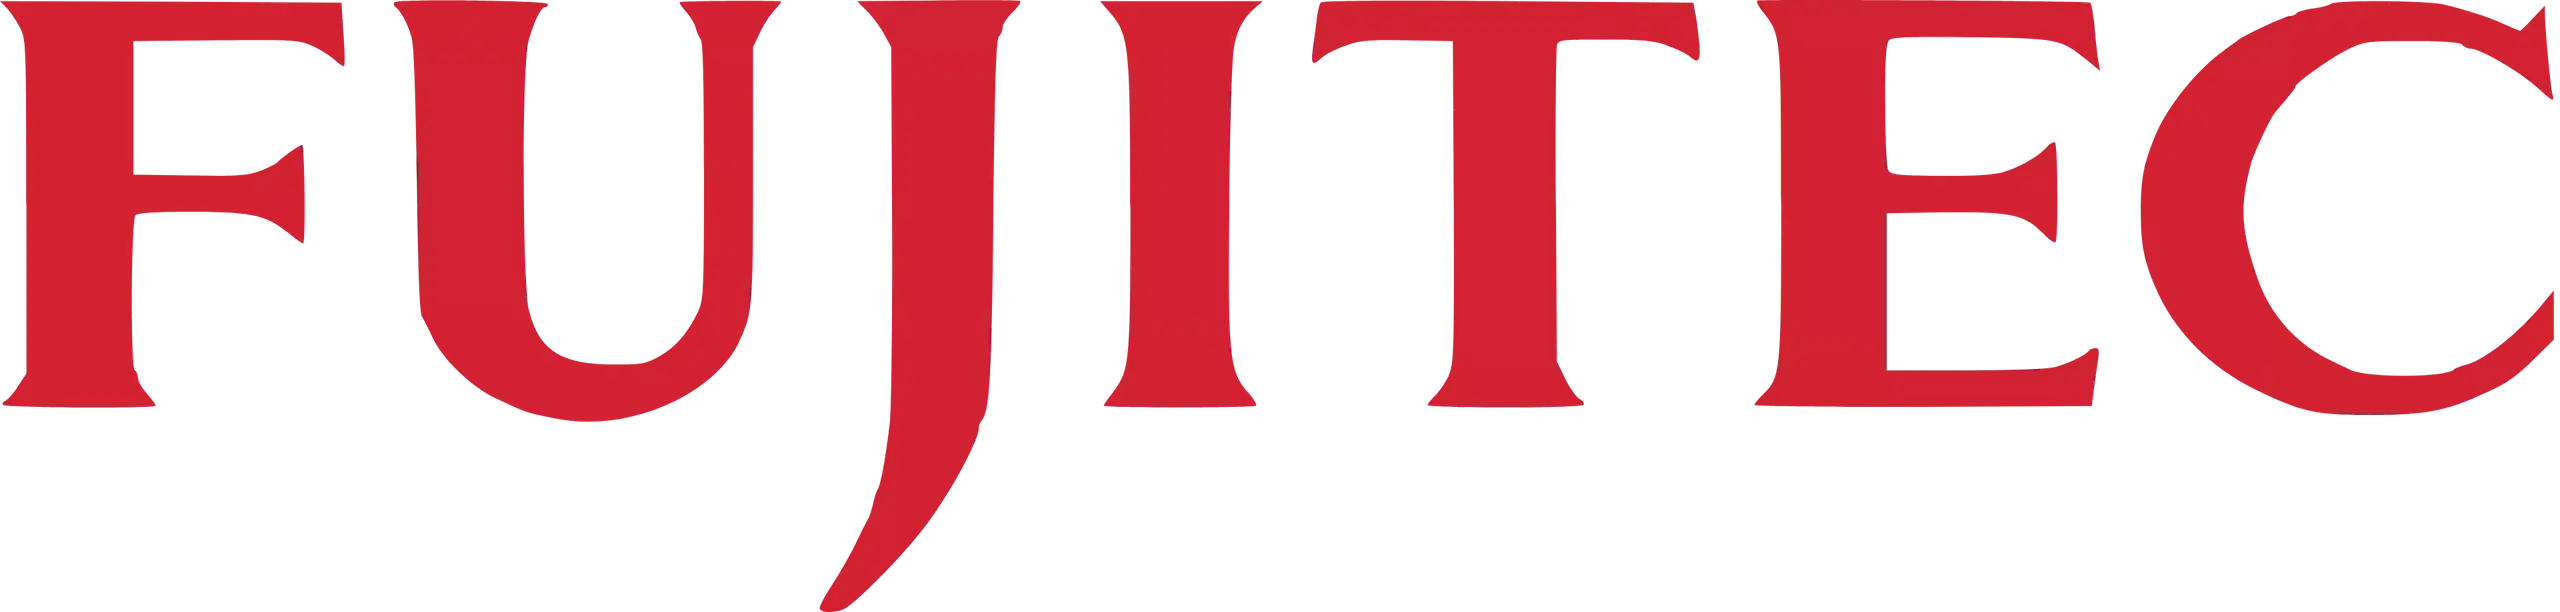 Fujitec logo